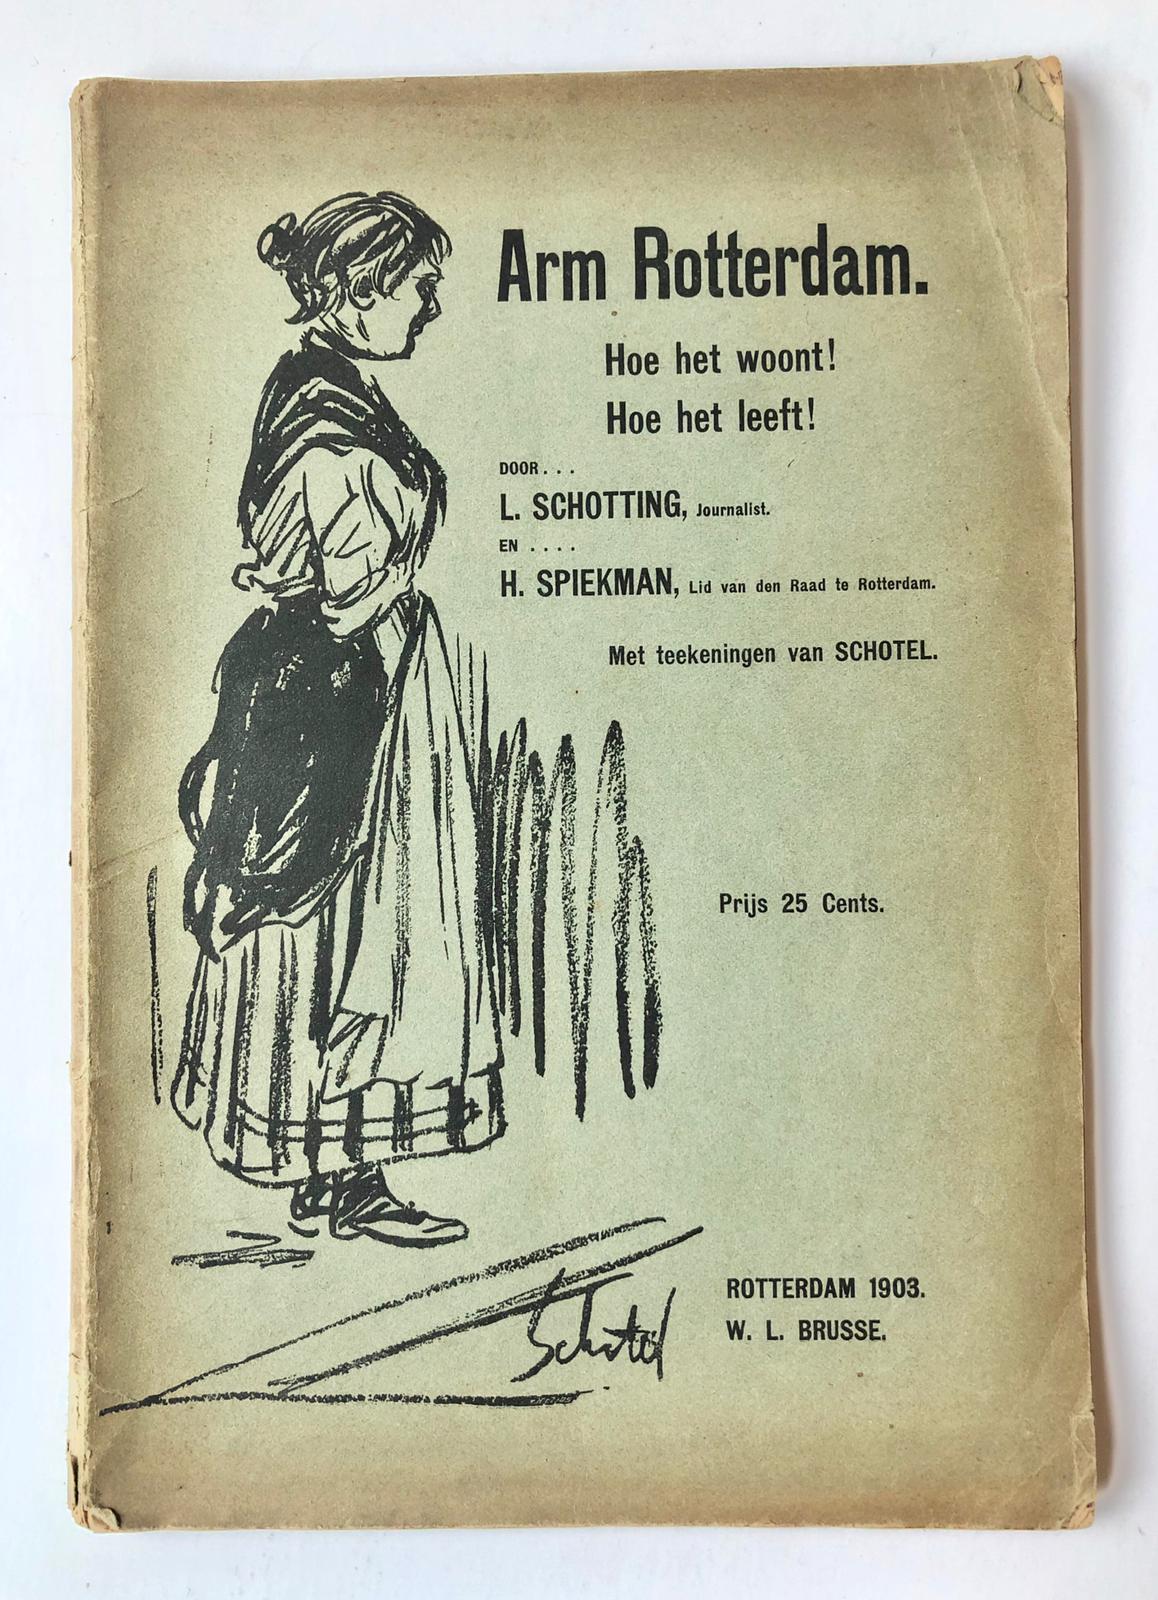 [Rotterdam, poverty, 1903] Arm Rotterdam. Hoe het woont! Hoe het leeft! Door L. Schotting, Journalist, en H. Spiekman, Lid van den Raad te Rotterdam. Met teekeningen van Schotel, W. L. Brusse, Rotterdam, 1903, 80 pp.